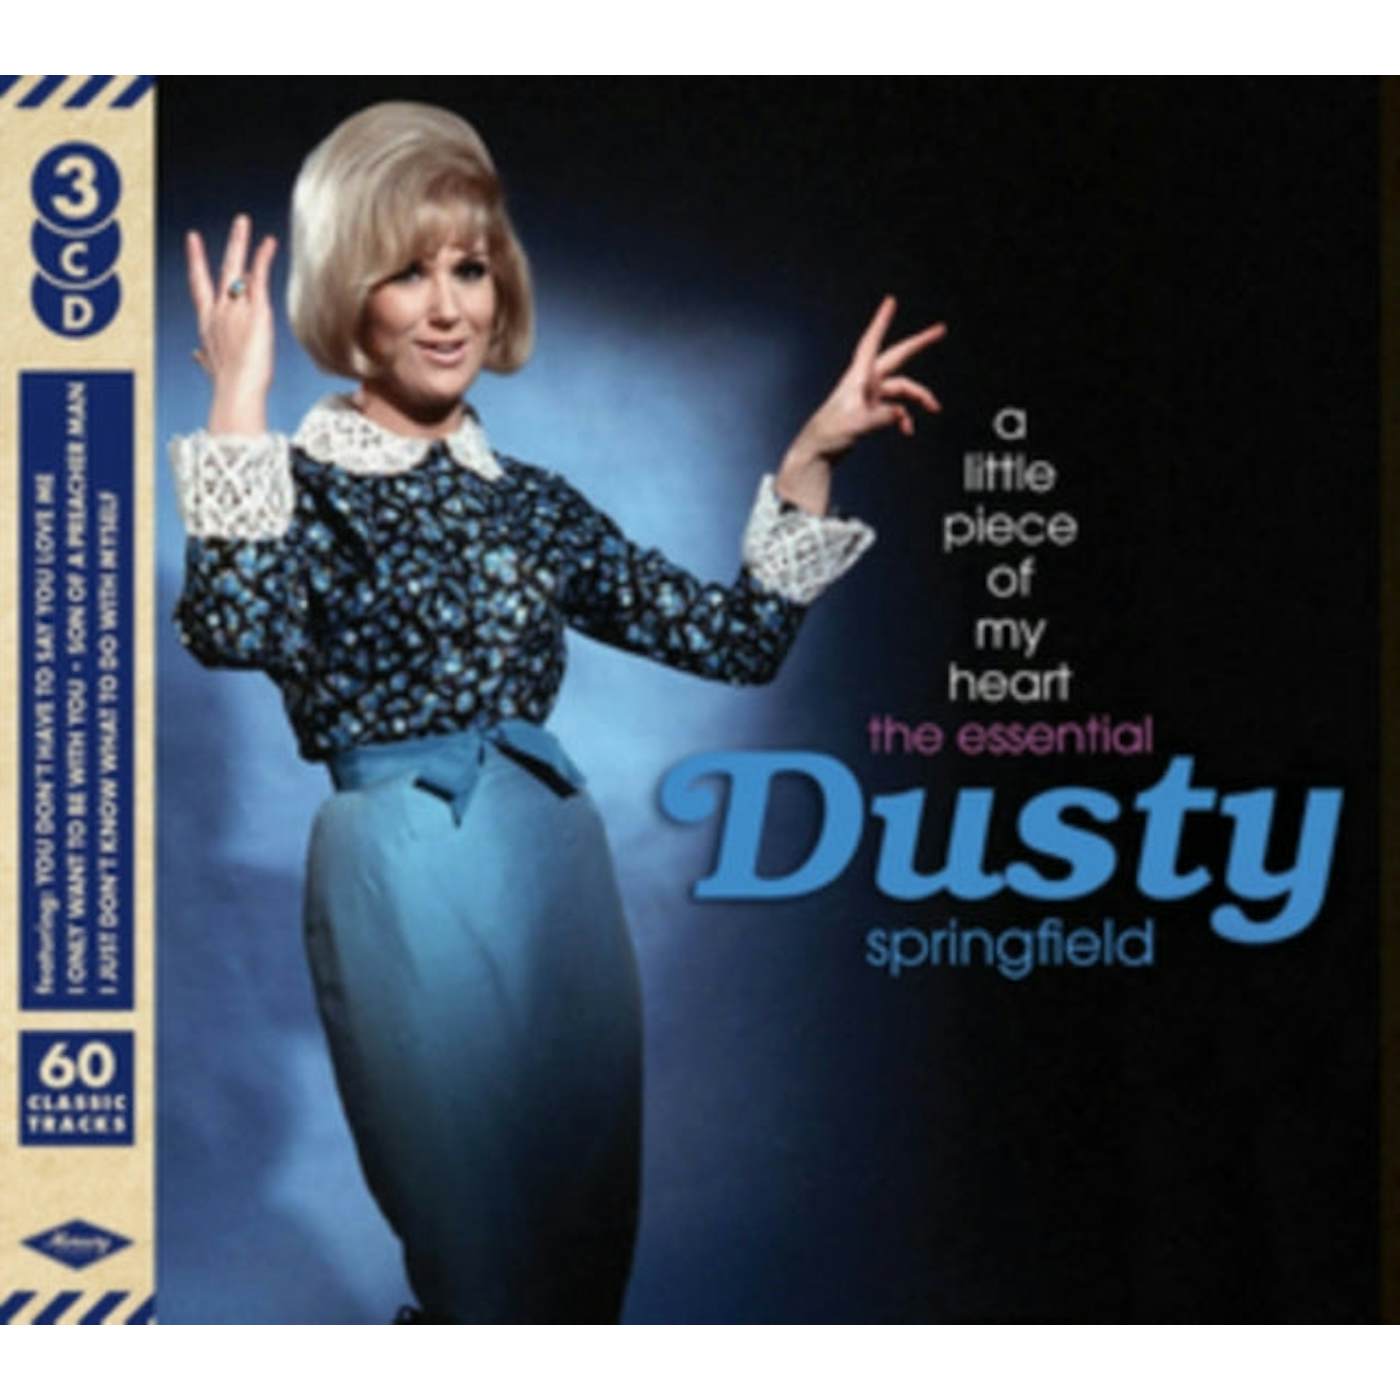 Dusty Springfield CD - A Little Piece Of My Heart